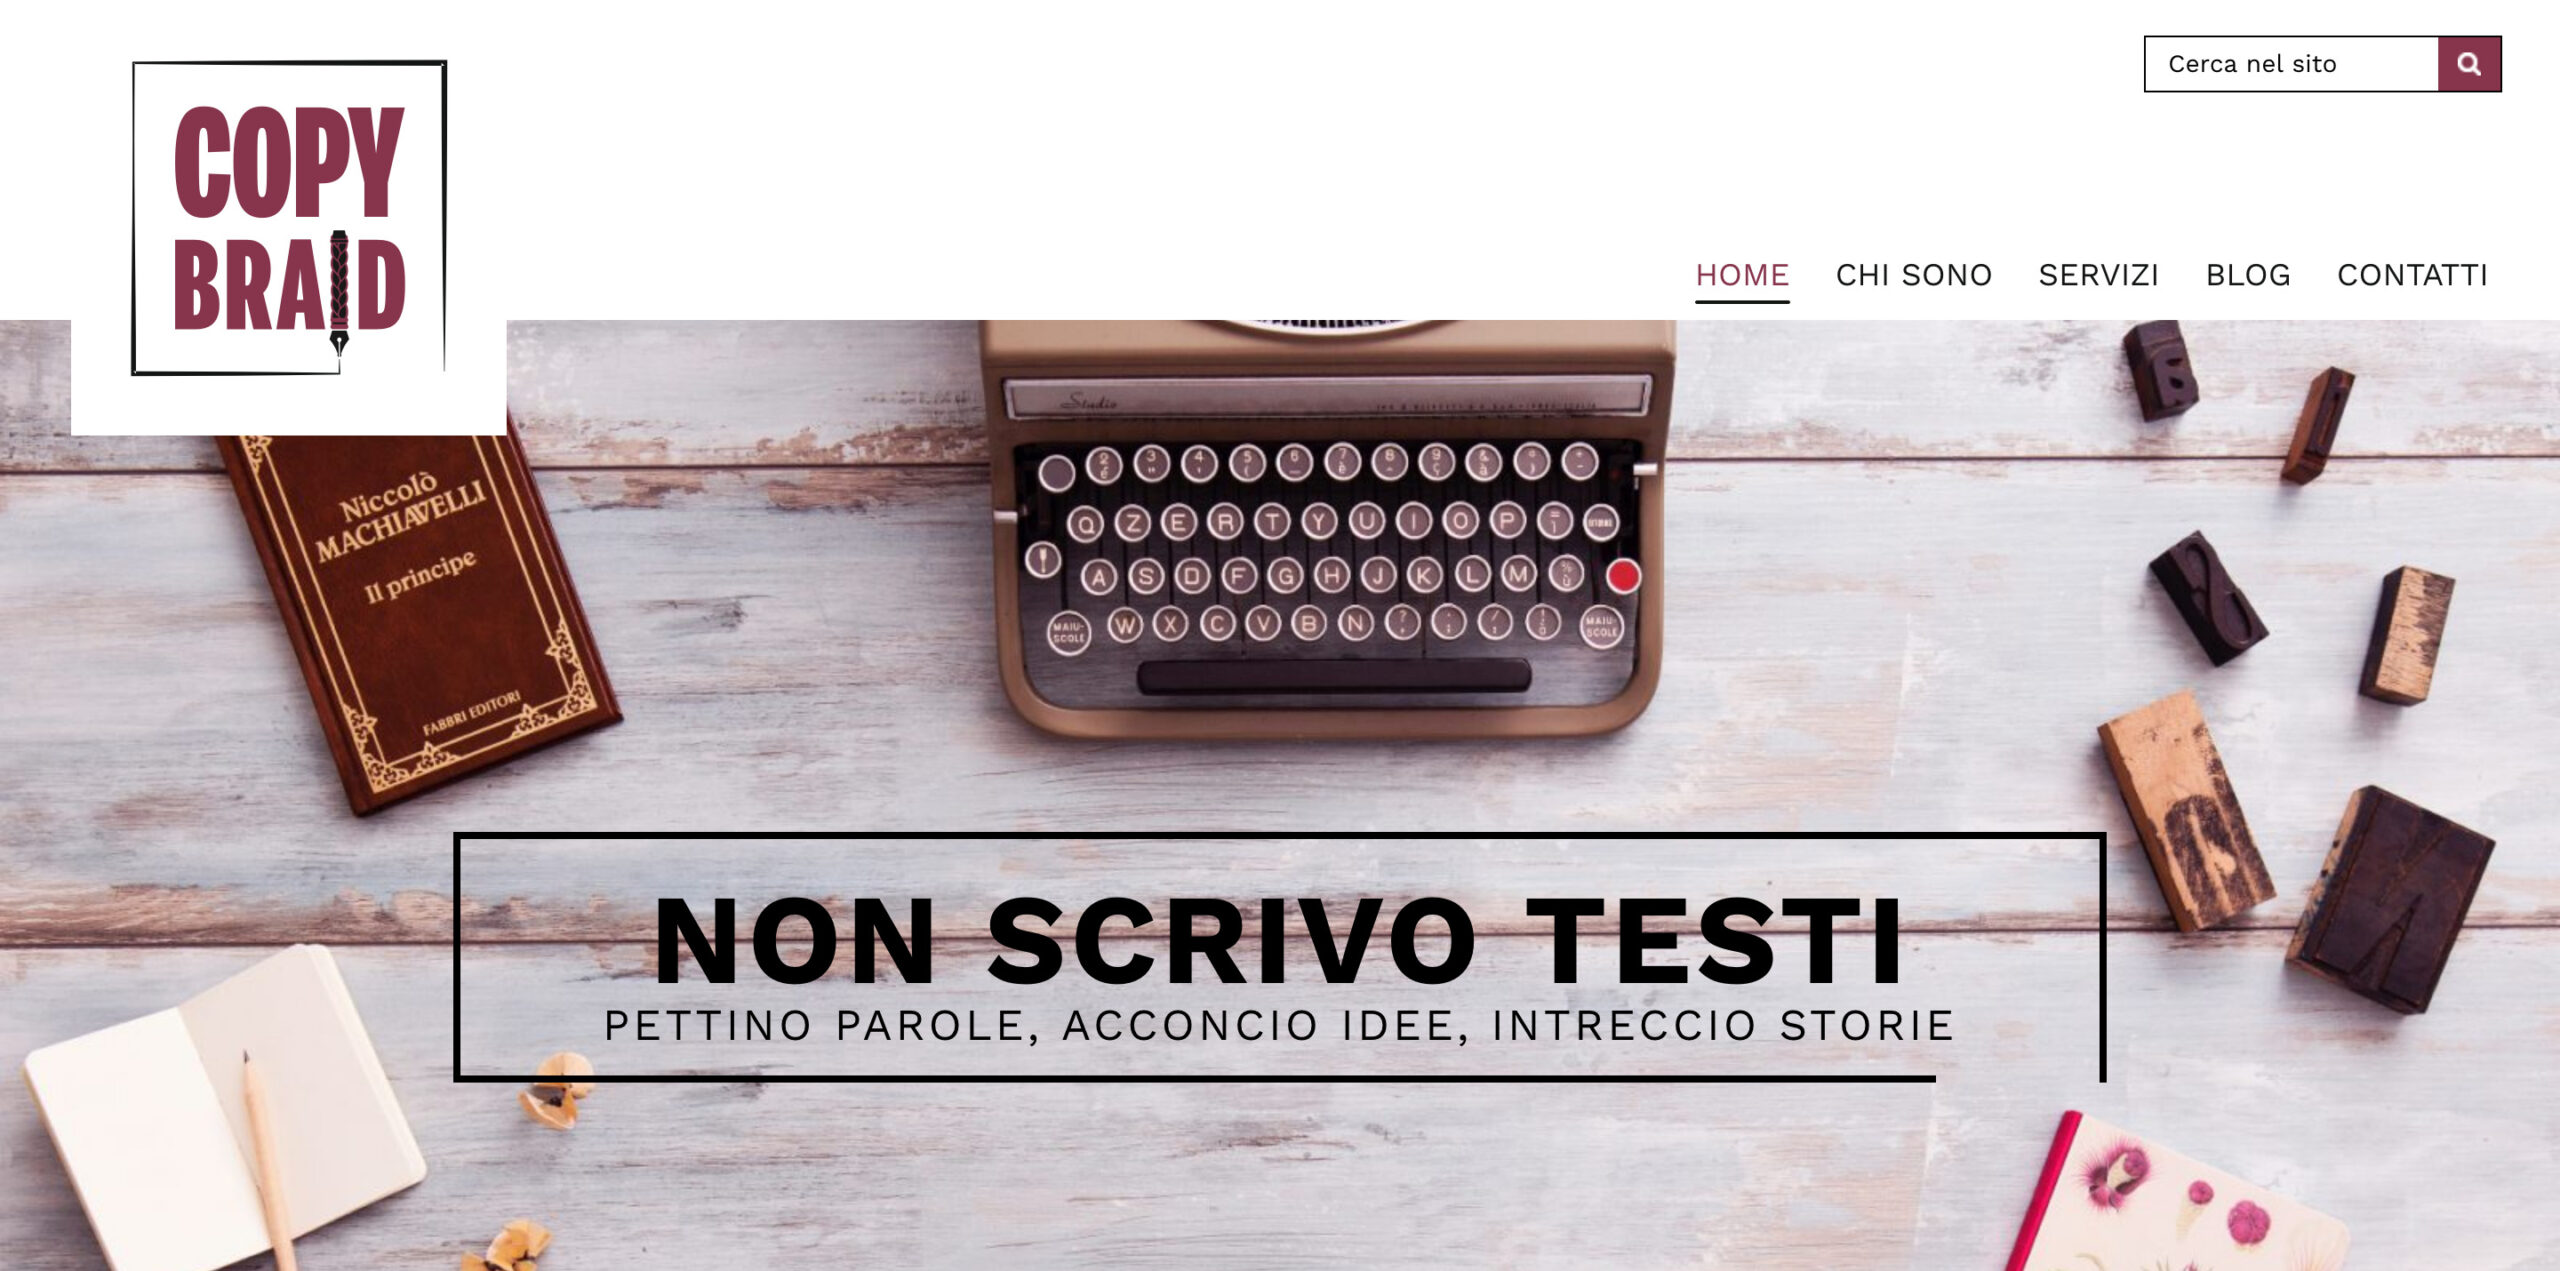 Screenshot_2019-03-06 Copybraid copywriter Livorno Intreccio storie a penna, seo e marketing